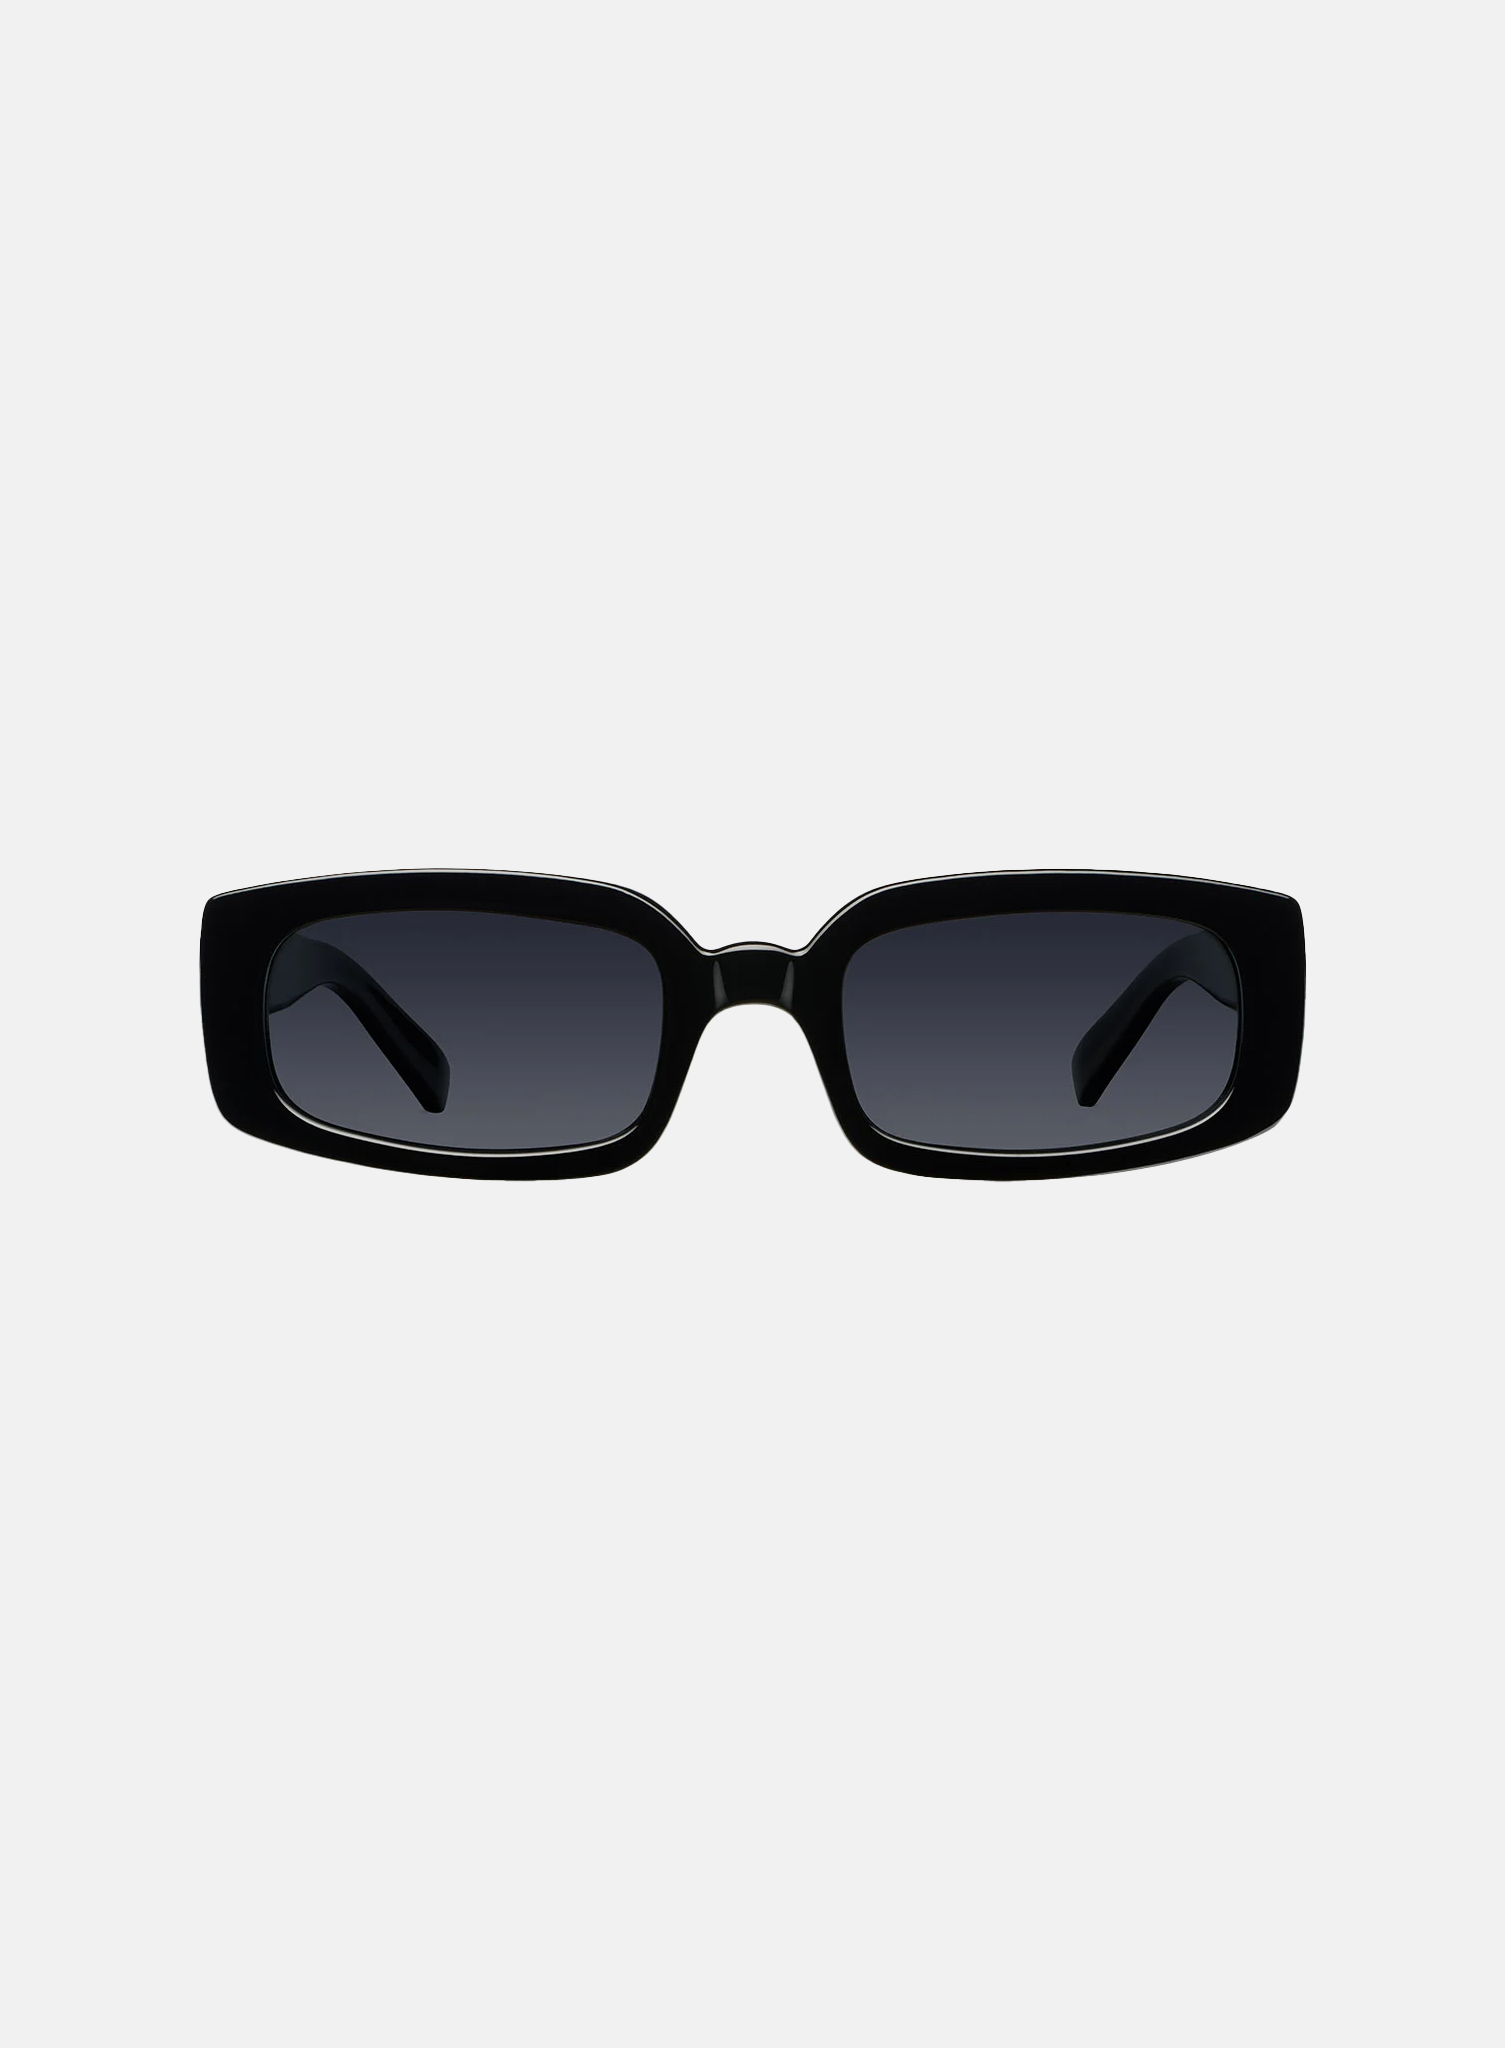 Konata Sunglasses Black